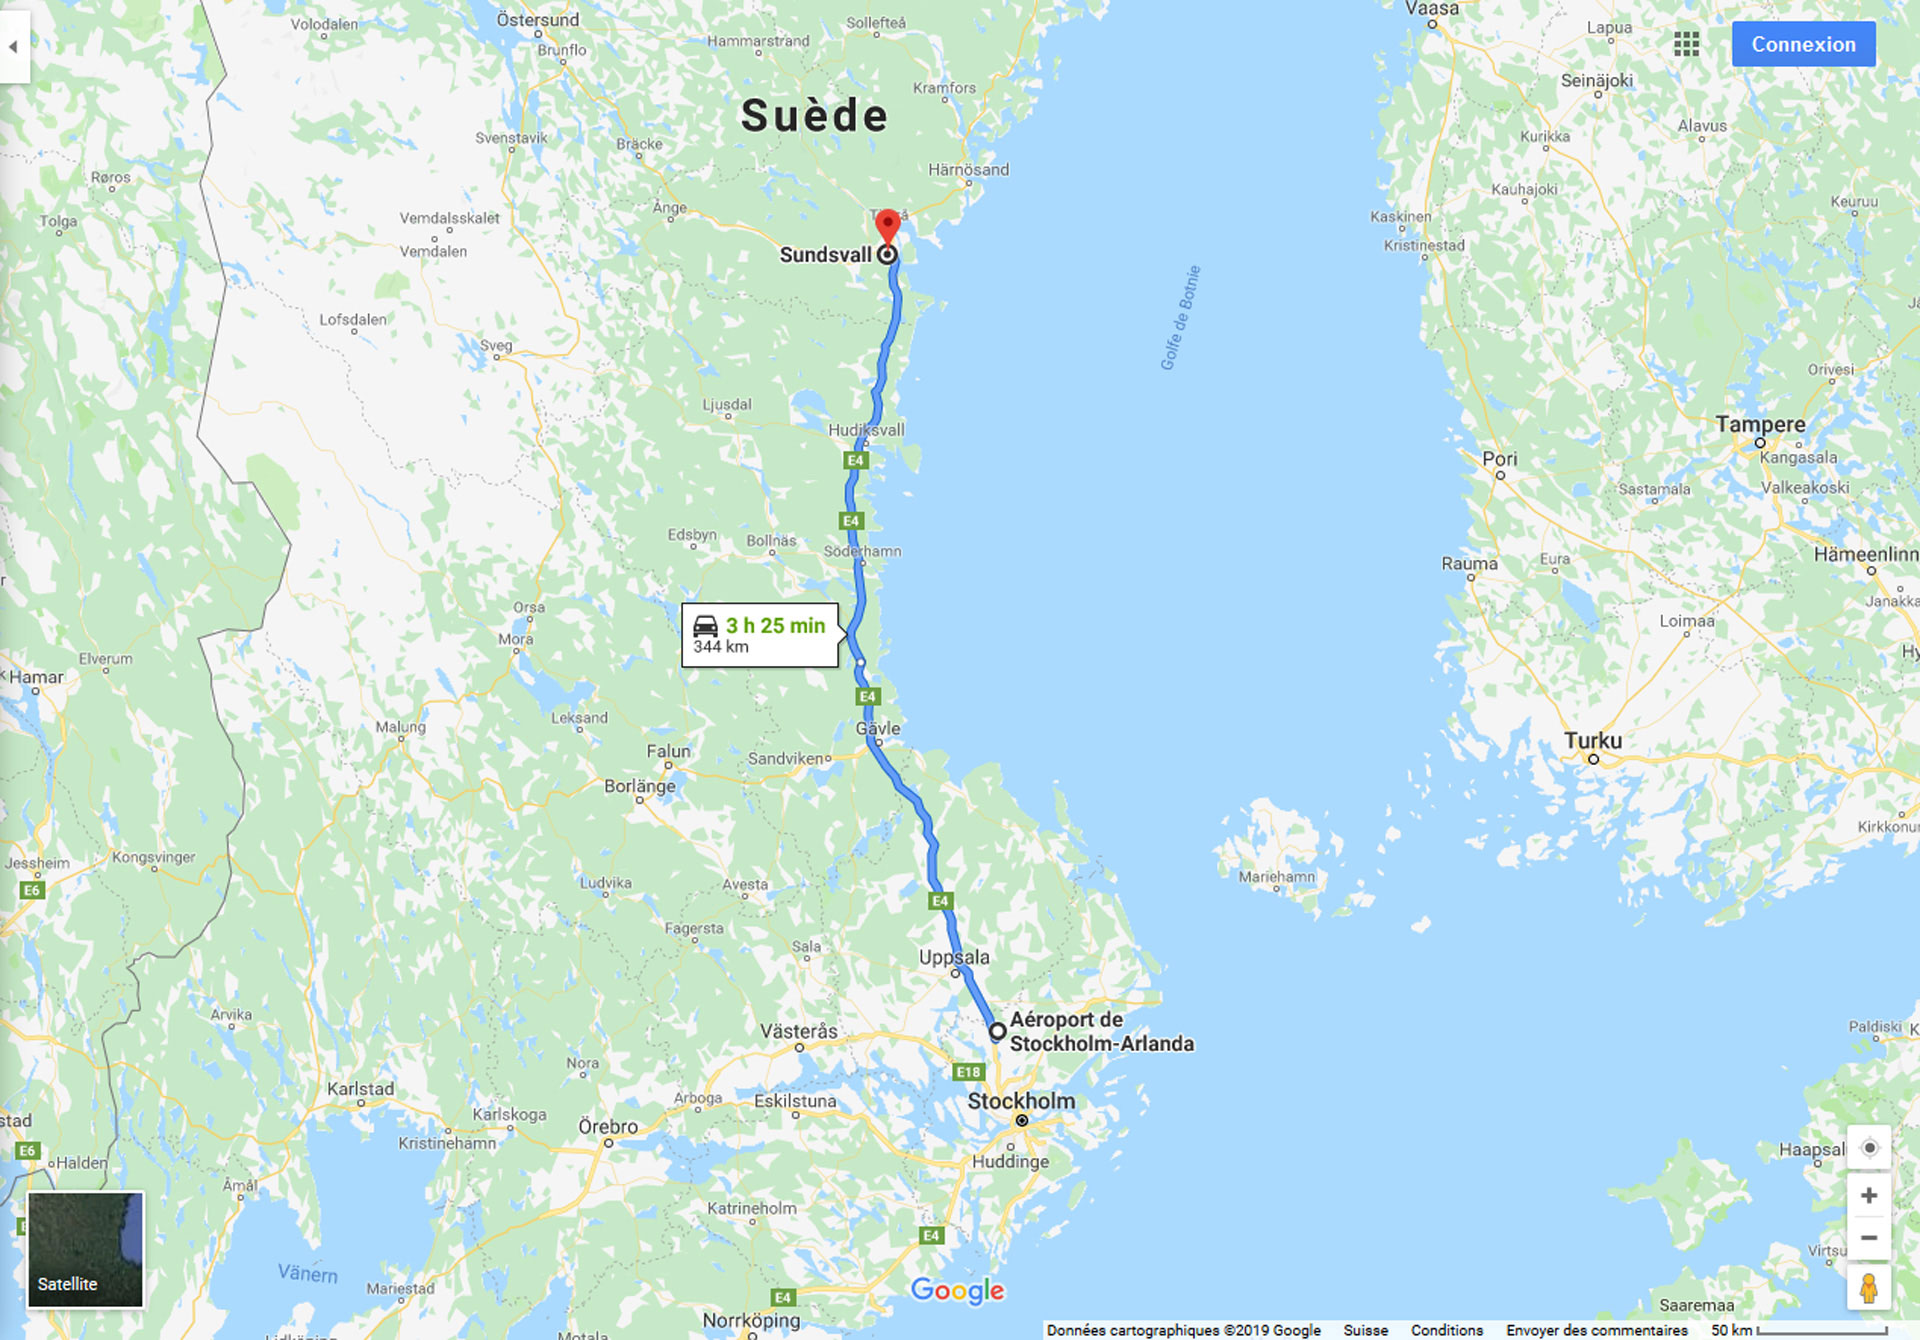 2019, scandinavie, stockholm, sundsvall